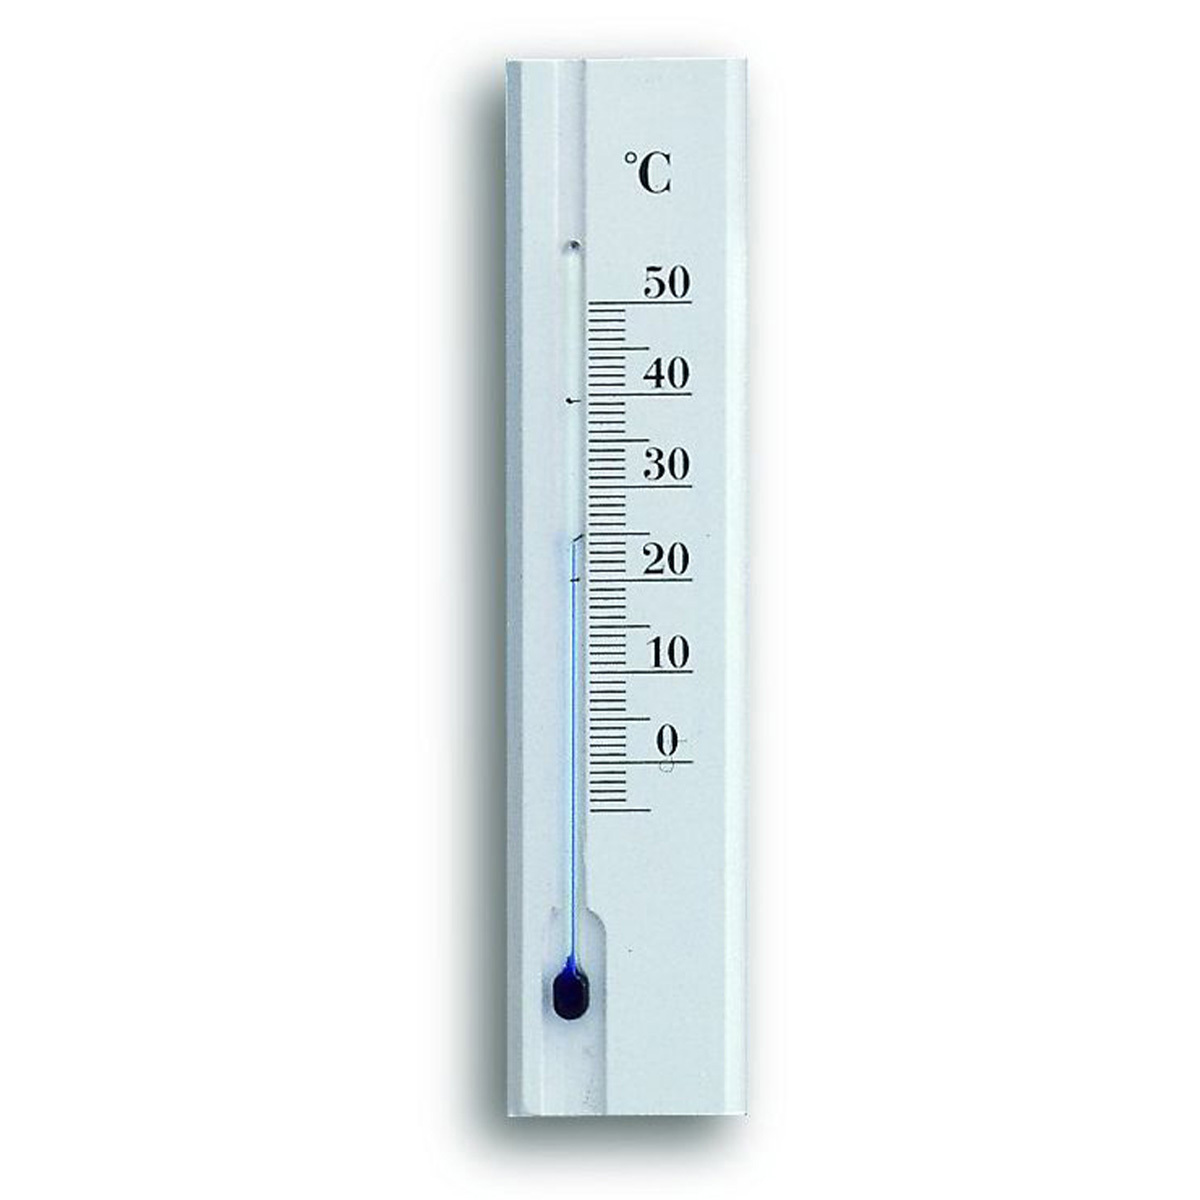 12-1032-09-analoges-innen-aussen-thermometer-buche-1200x1200px.jpg